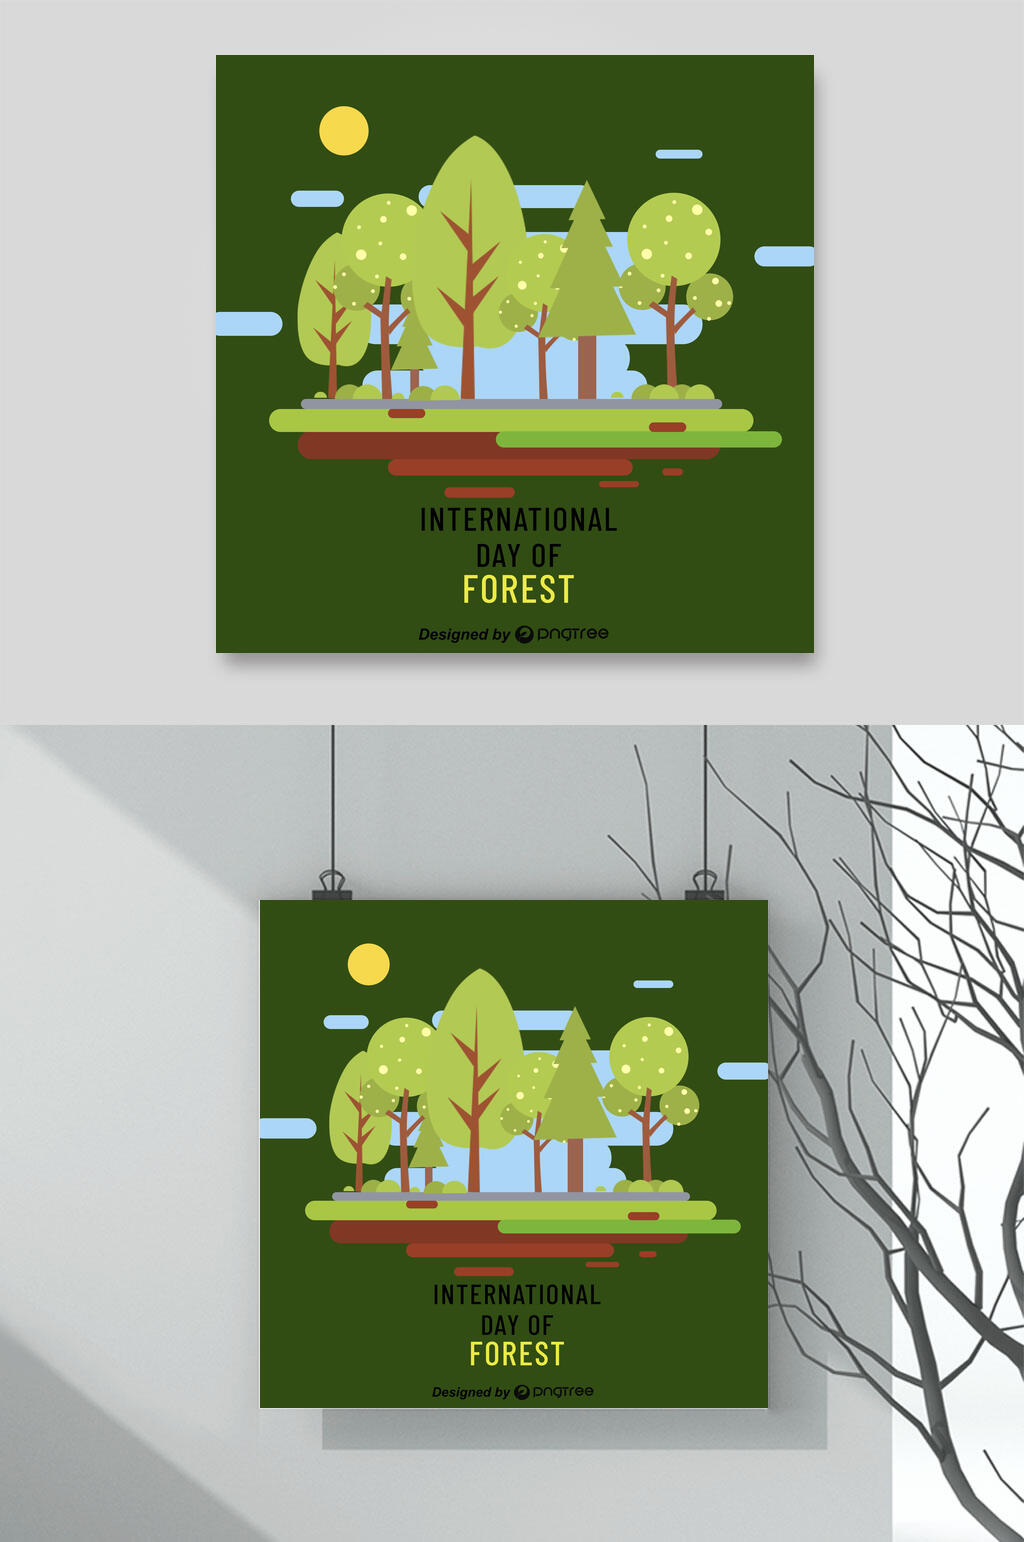 绿色保护森林资源环保插画素材